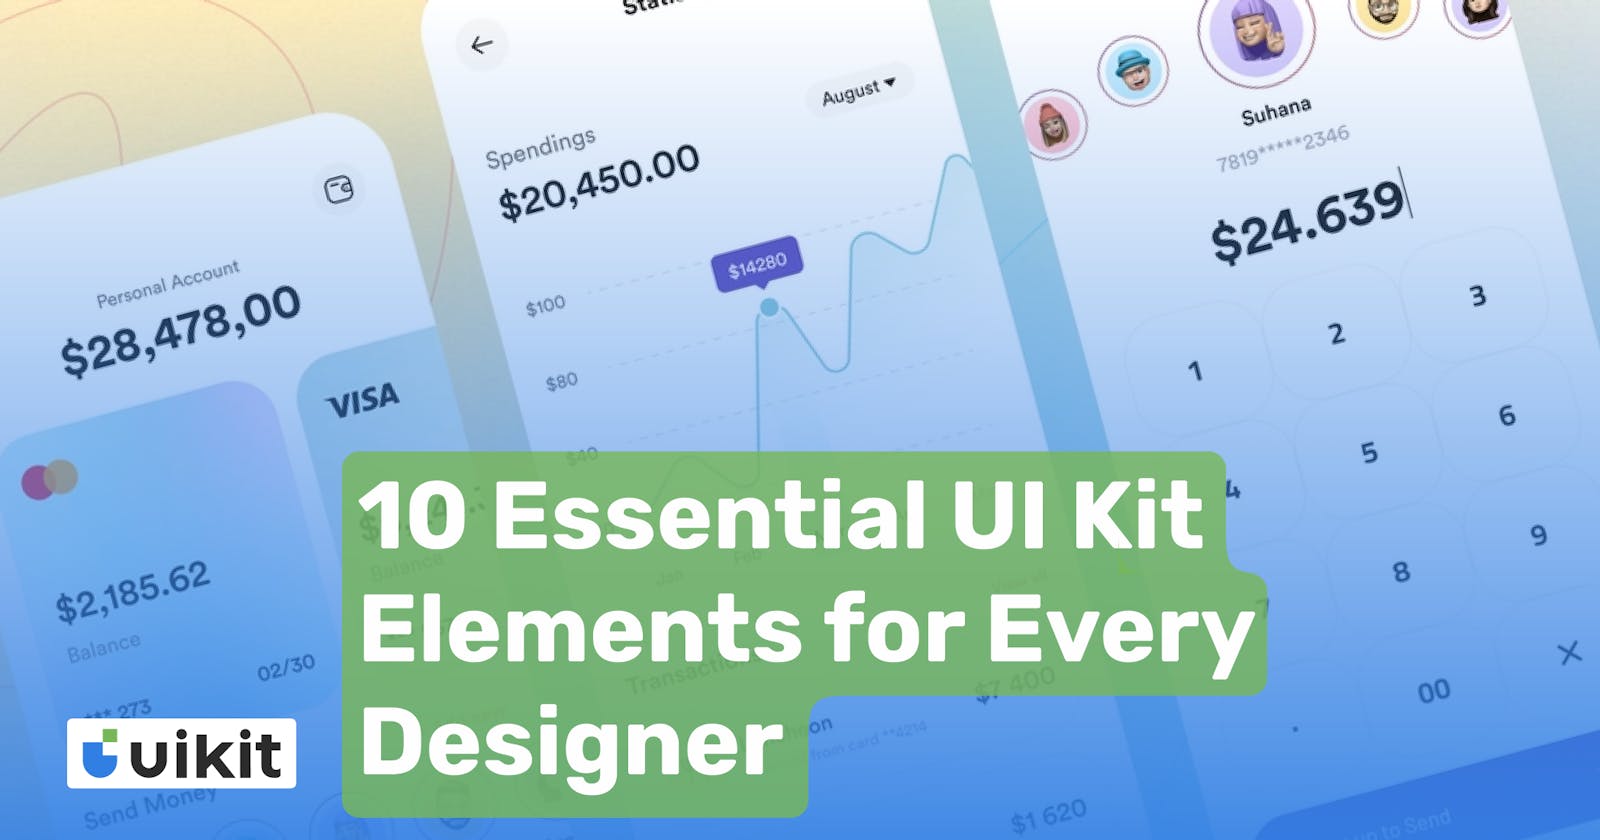 10 Essential UI Kit Elements
Every Designer Should Consider